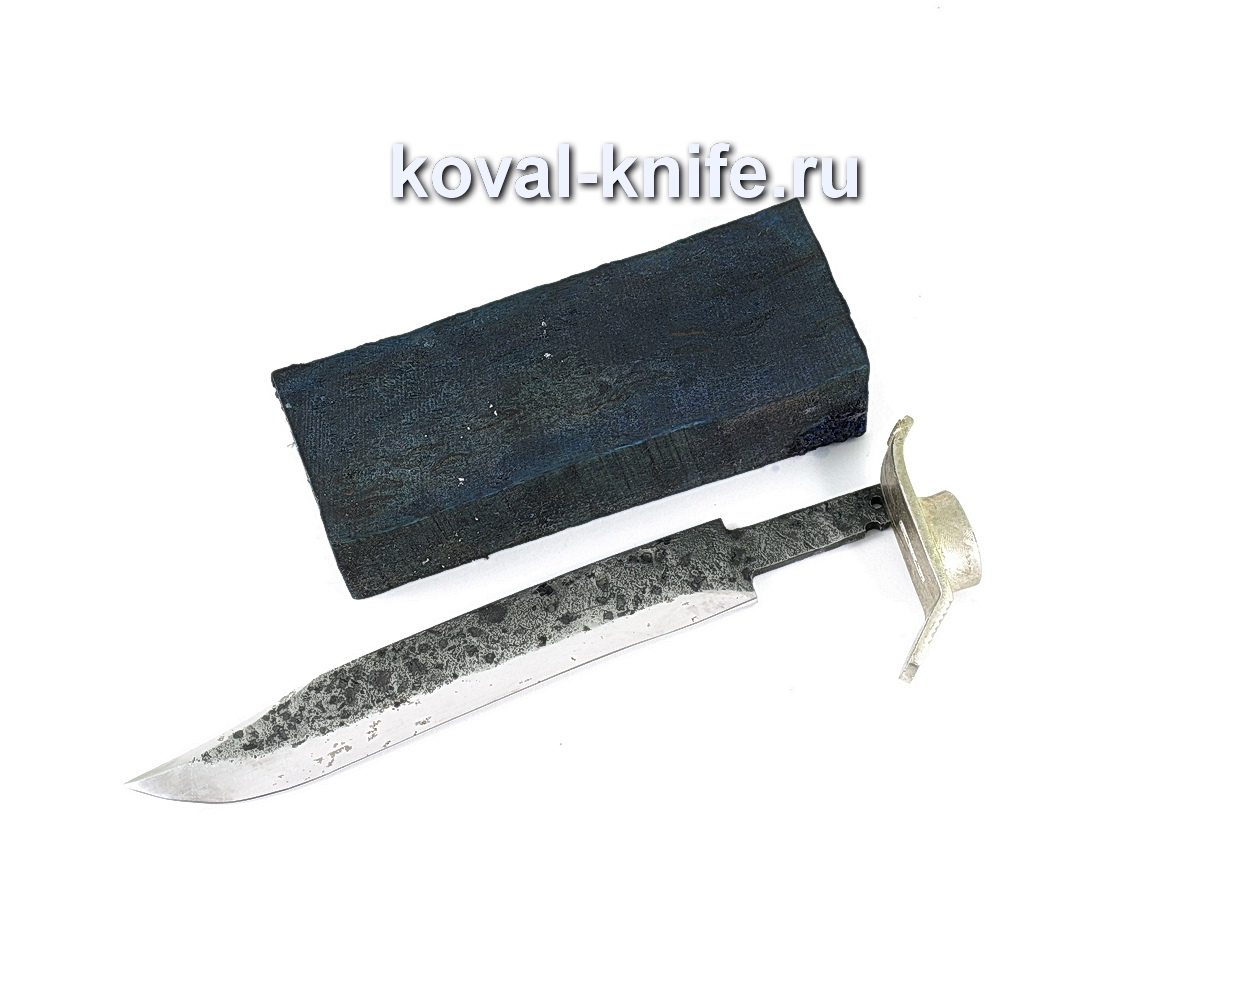 Комплект для ножа НР-40 8 (клинок кованая 9ХС 3,5мм, литье 1шт., граб брусок)